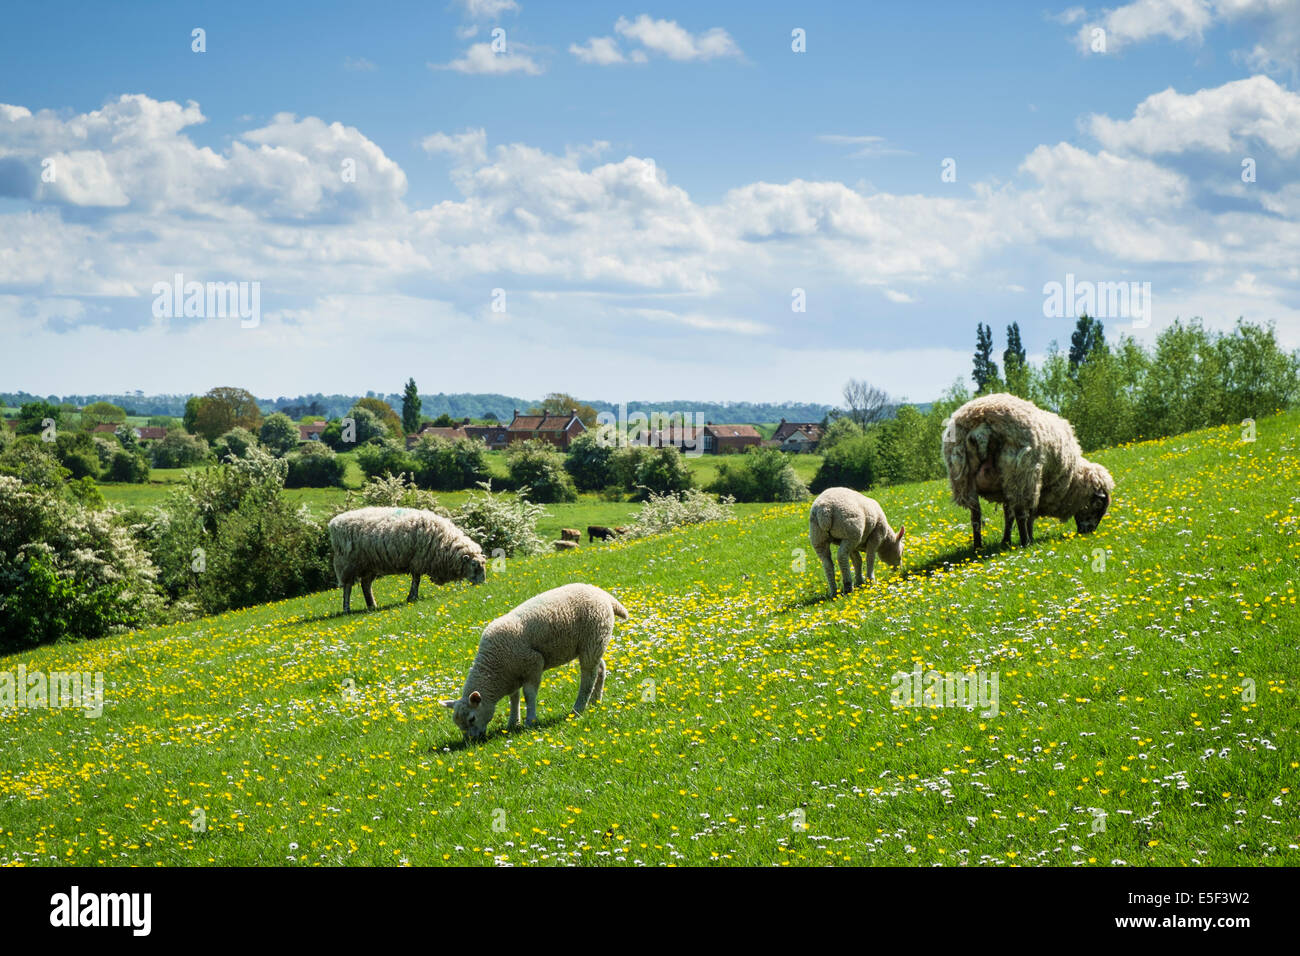 Royaume-Uni, campagne anglaise en saison de printemps avec des moutons et des agneaux dans un pré Somerset, Angleterre, Royaume-Uni Banque D'Images